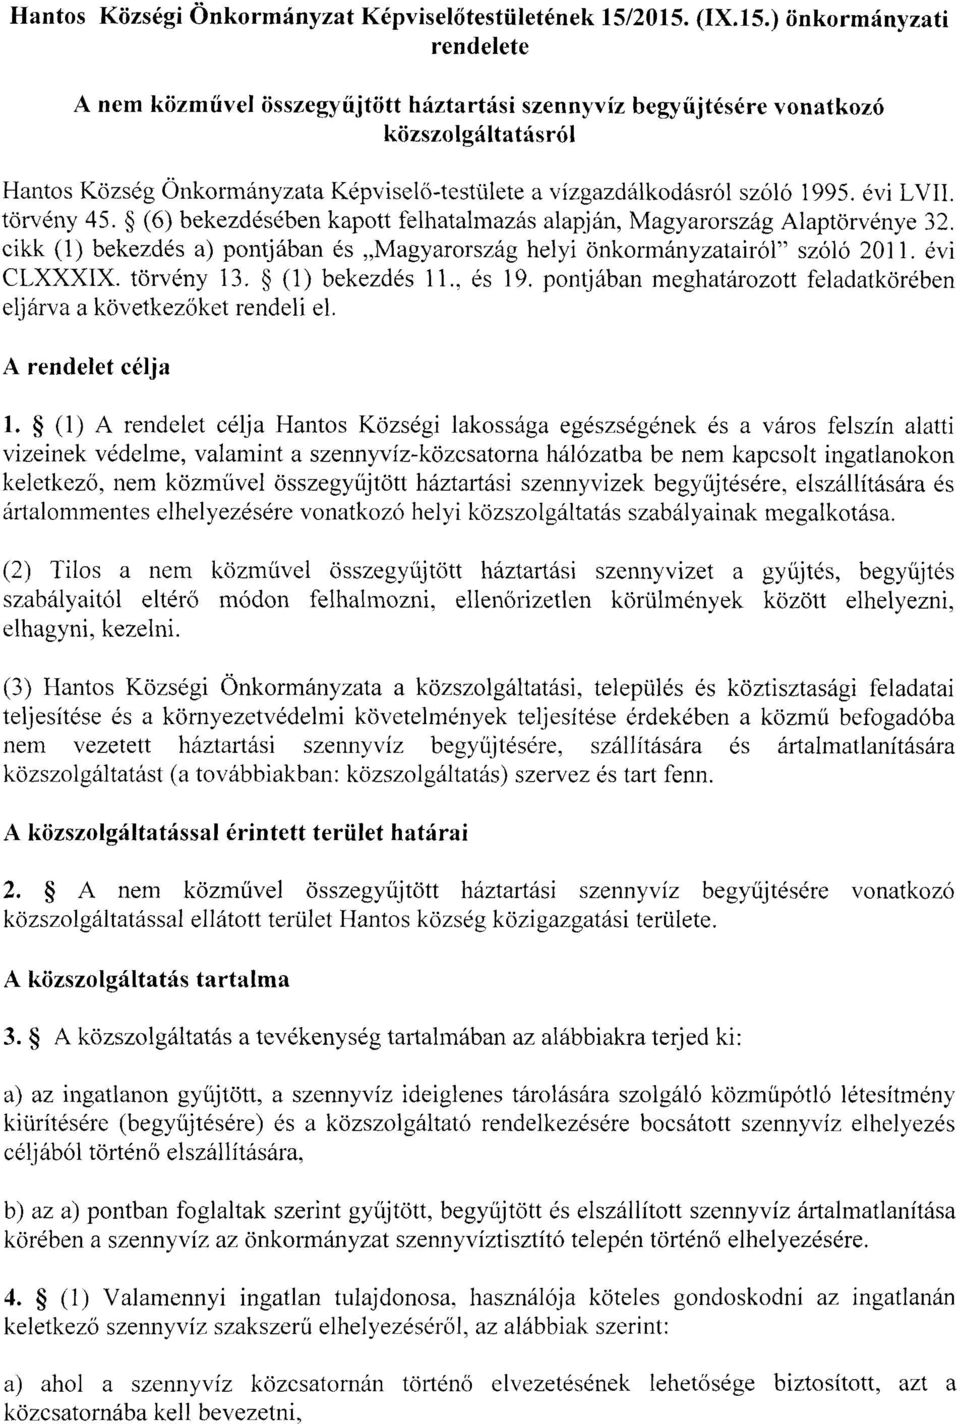 szóló 1995. évi LVII. törvény 45. (6) bekezdésében kapott felhatalmazás alapján, Magyarország Alaptörvénye 32. cikk (1) bekezdés a) pontjában és Magyarország helyi önkormányzatairól szóló 2011.